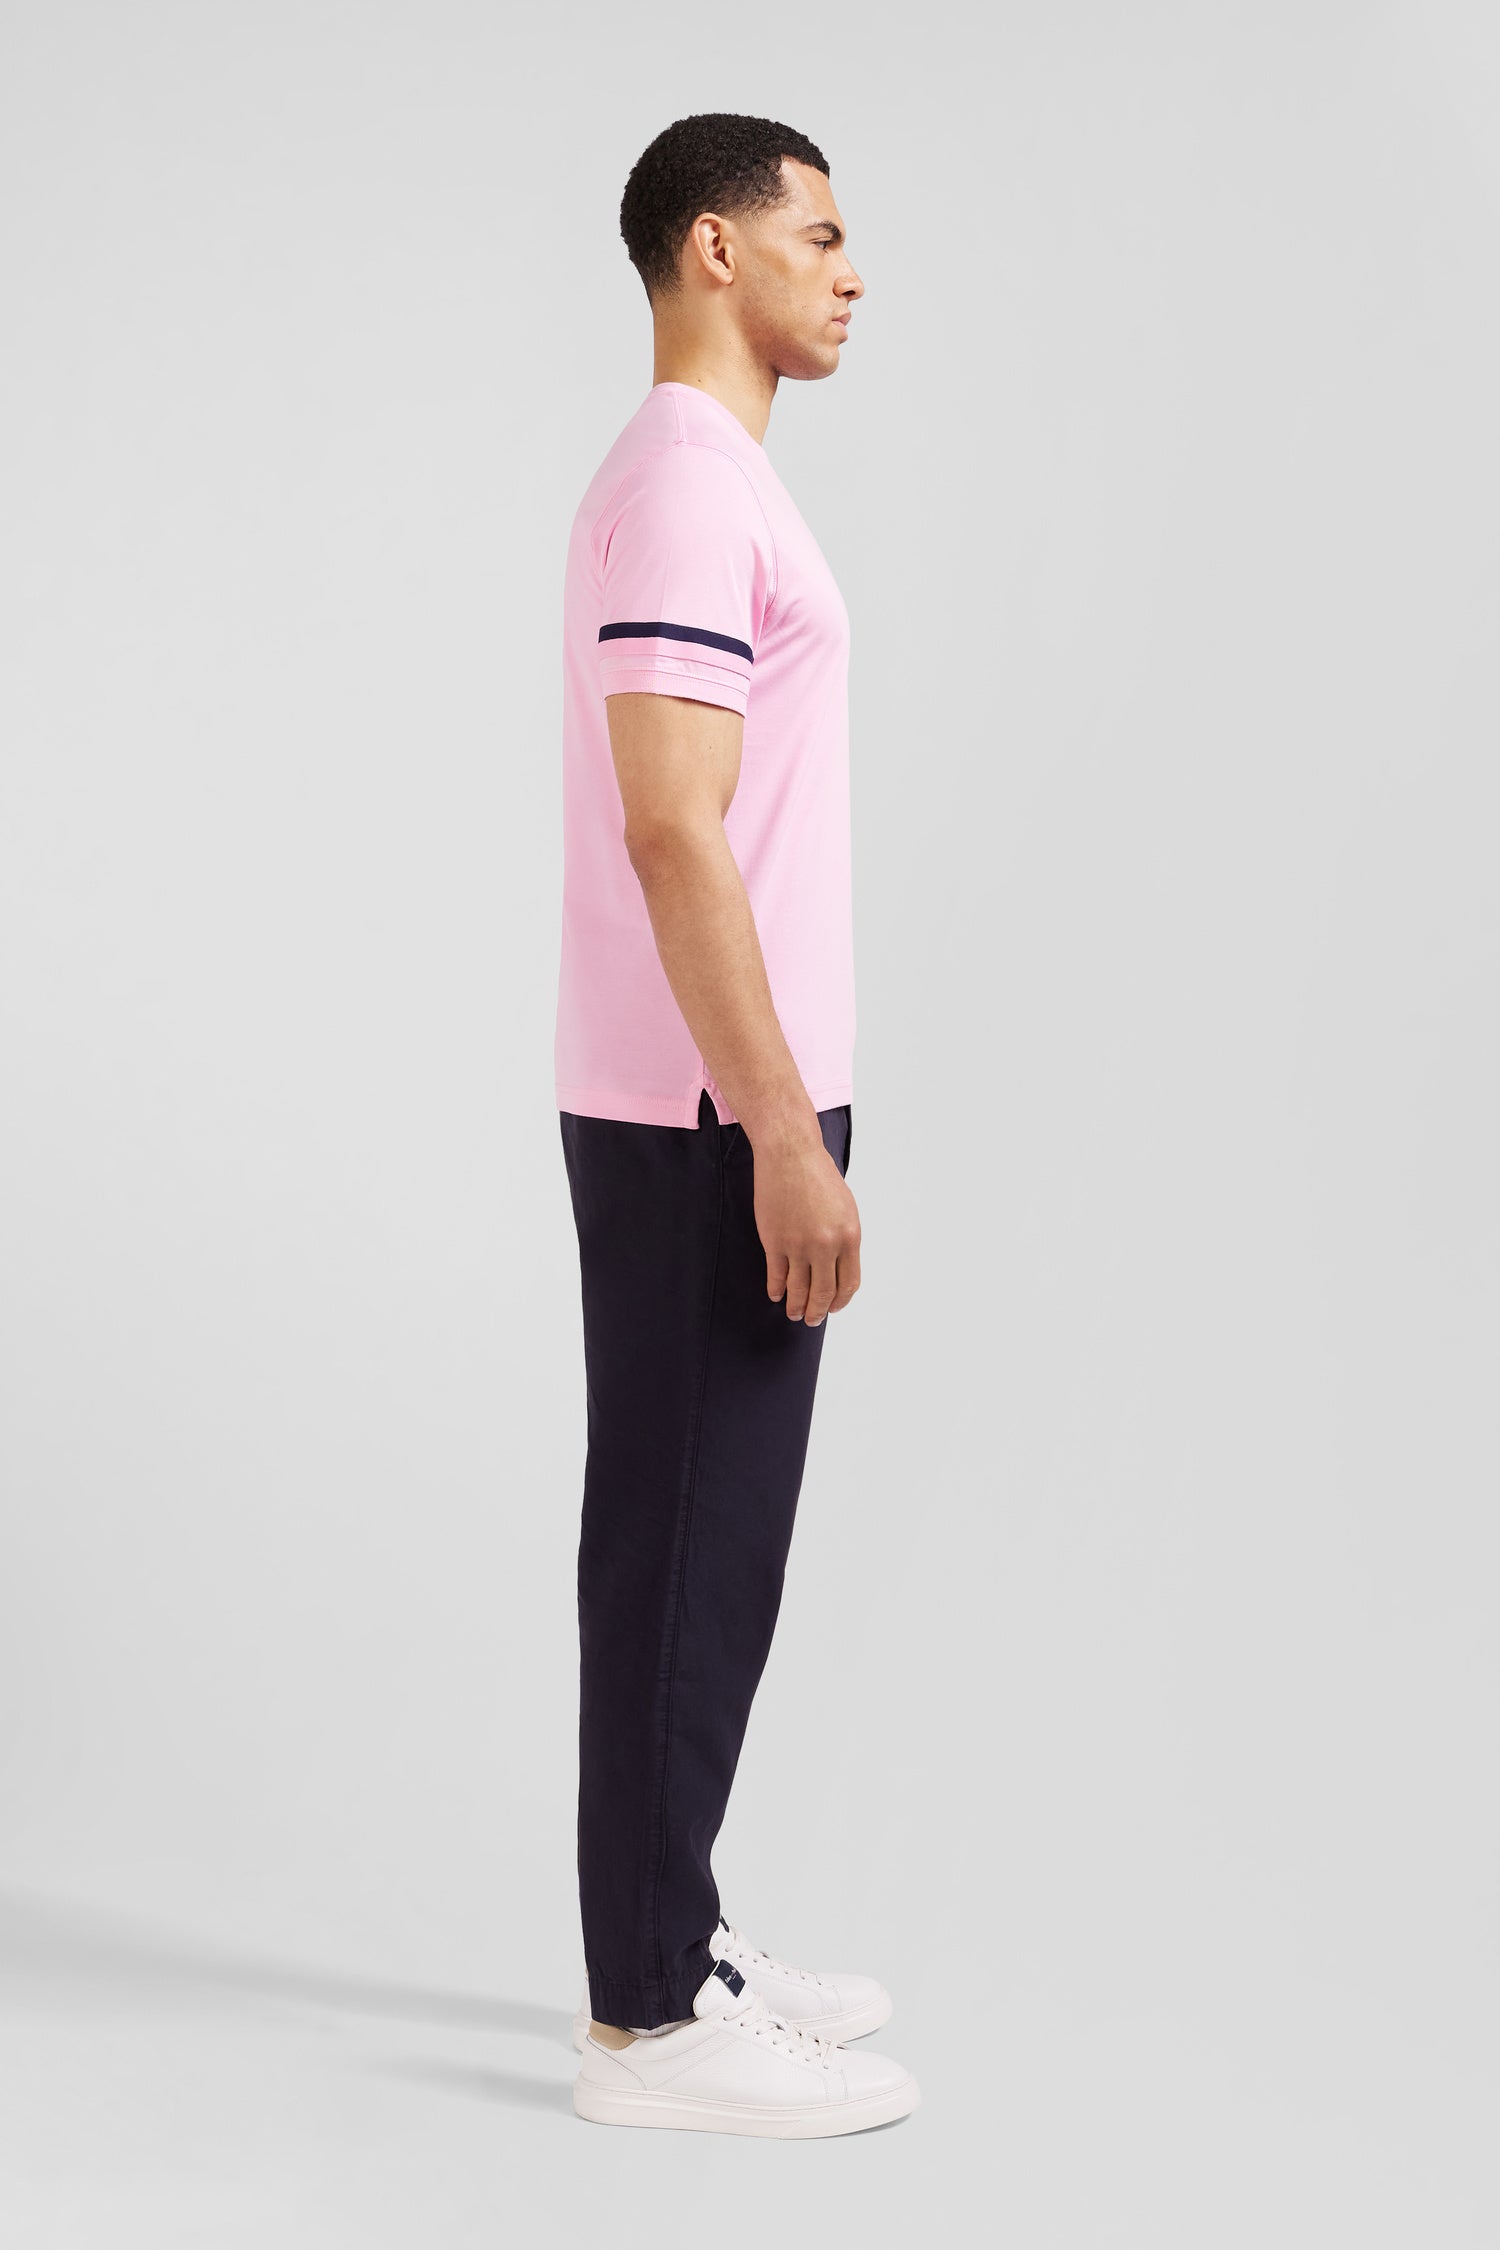 T-shirt manches courtes rose en coton badges emblème